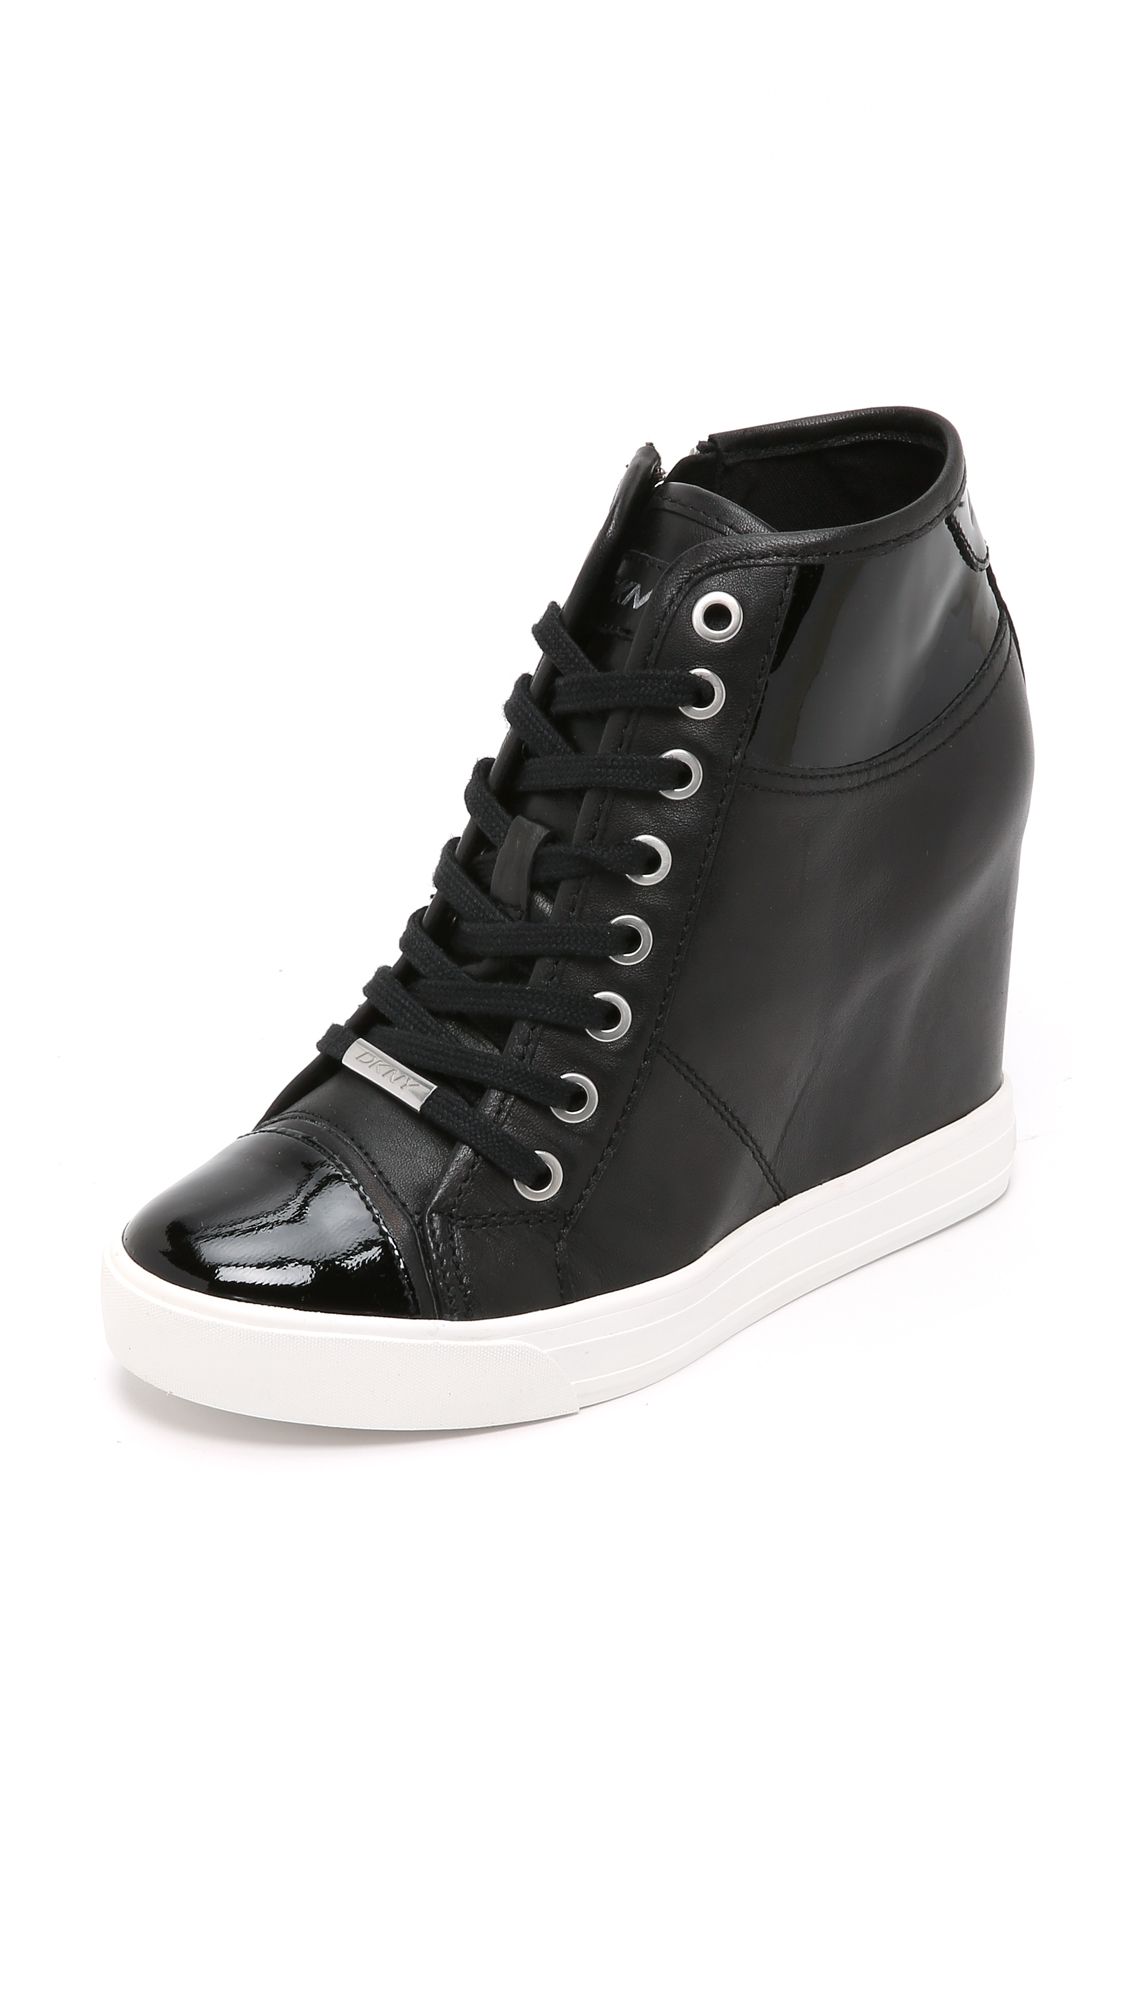 DKNY Leather Grommet Zip Wedge Sneakers in Black - Lyst